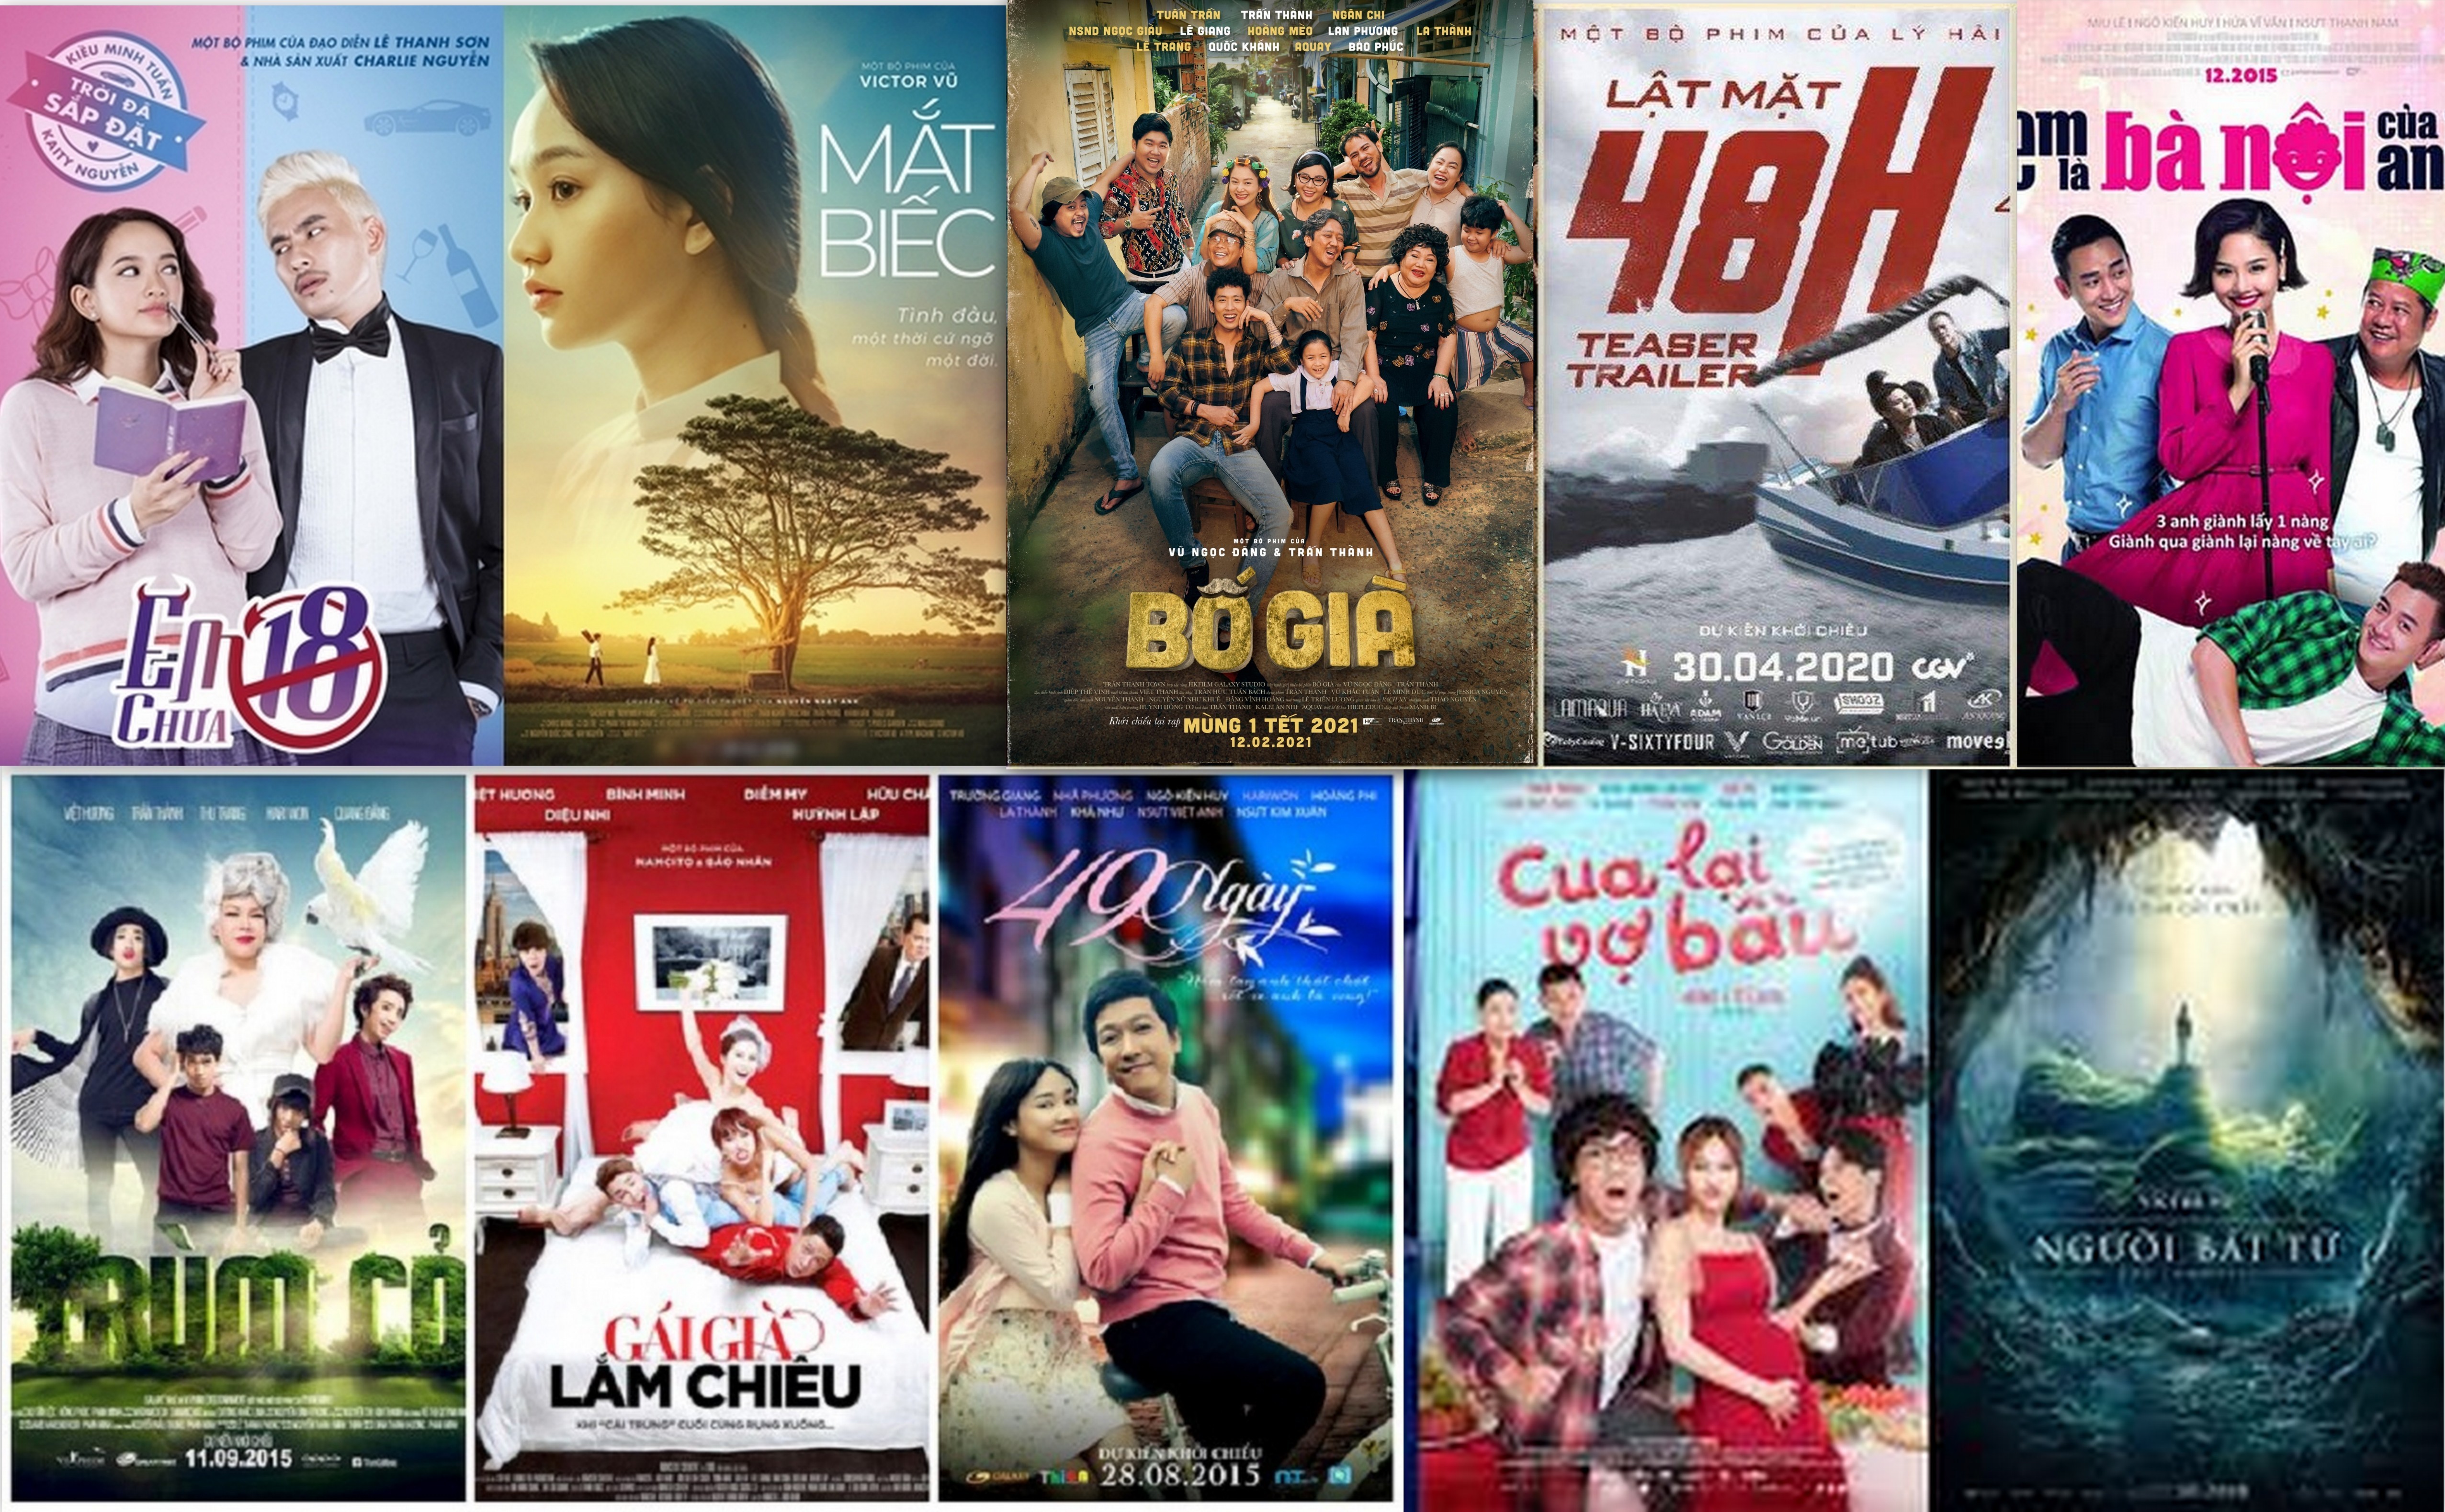 Công nghiệp điện ảnh đang ngày càng phát triển và trở thành một ngành công nghiệp lớn ở Việt Nam. Đó là sự pha trộn của nghệ thuật và công nghệ. Hình ảnh liên quan đến công nghiệp điện ảnh sẽ giúp bạn hiểu rõ hơn về quy trình sản xuất các tác phẩm điện ảnh cũng như những thách thức mà ngành này đang đối mặt.